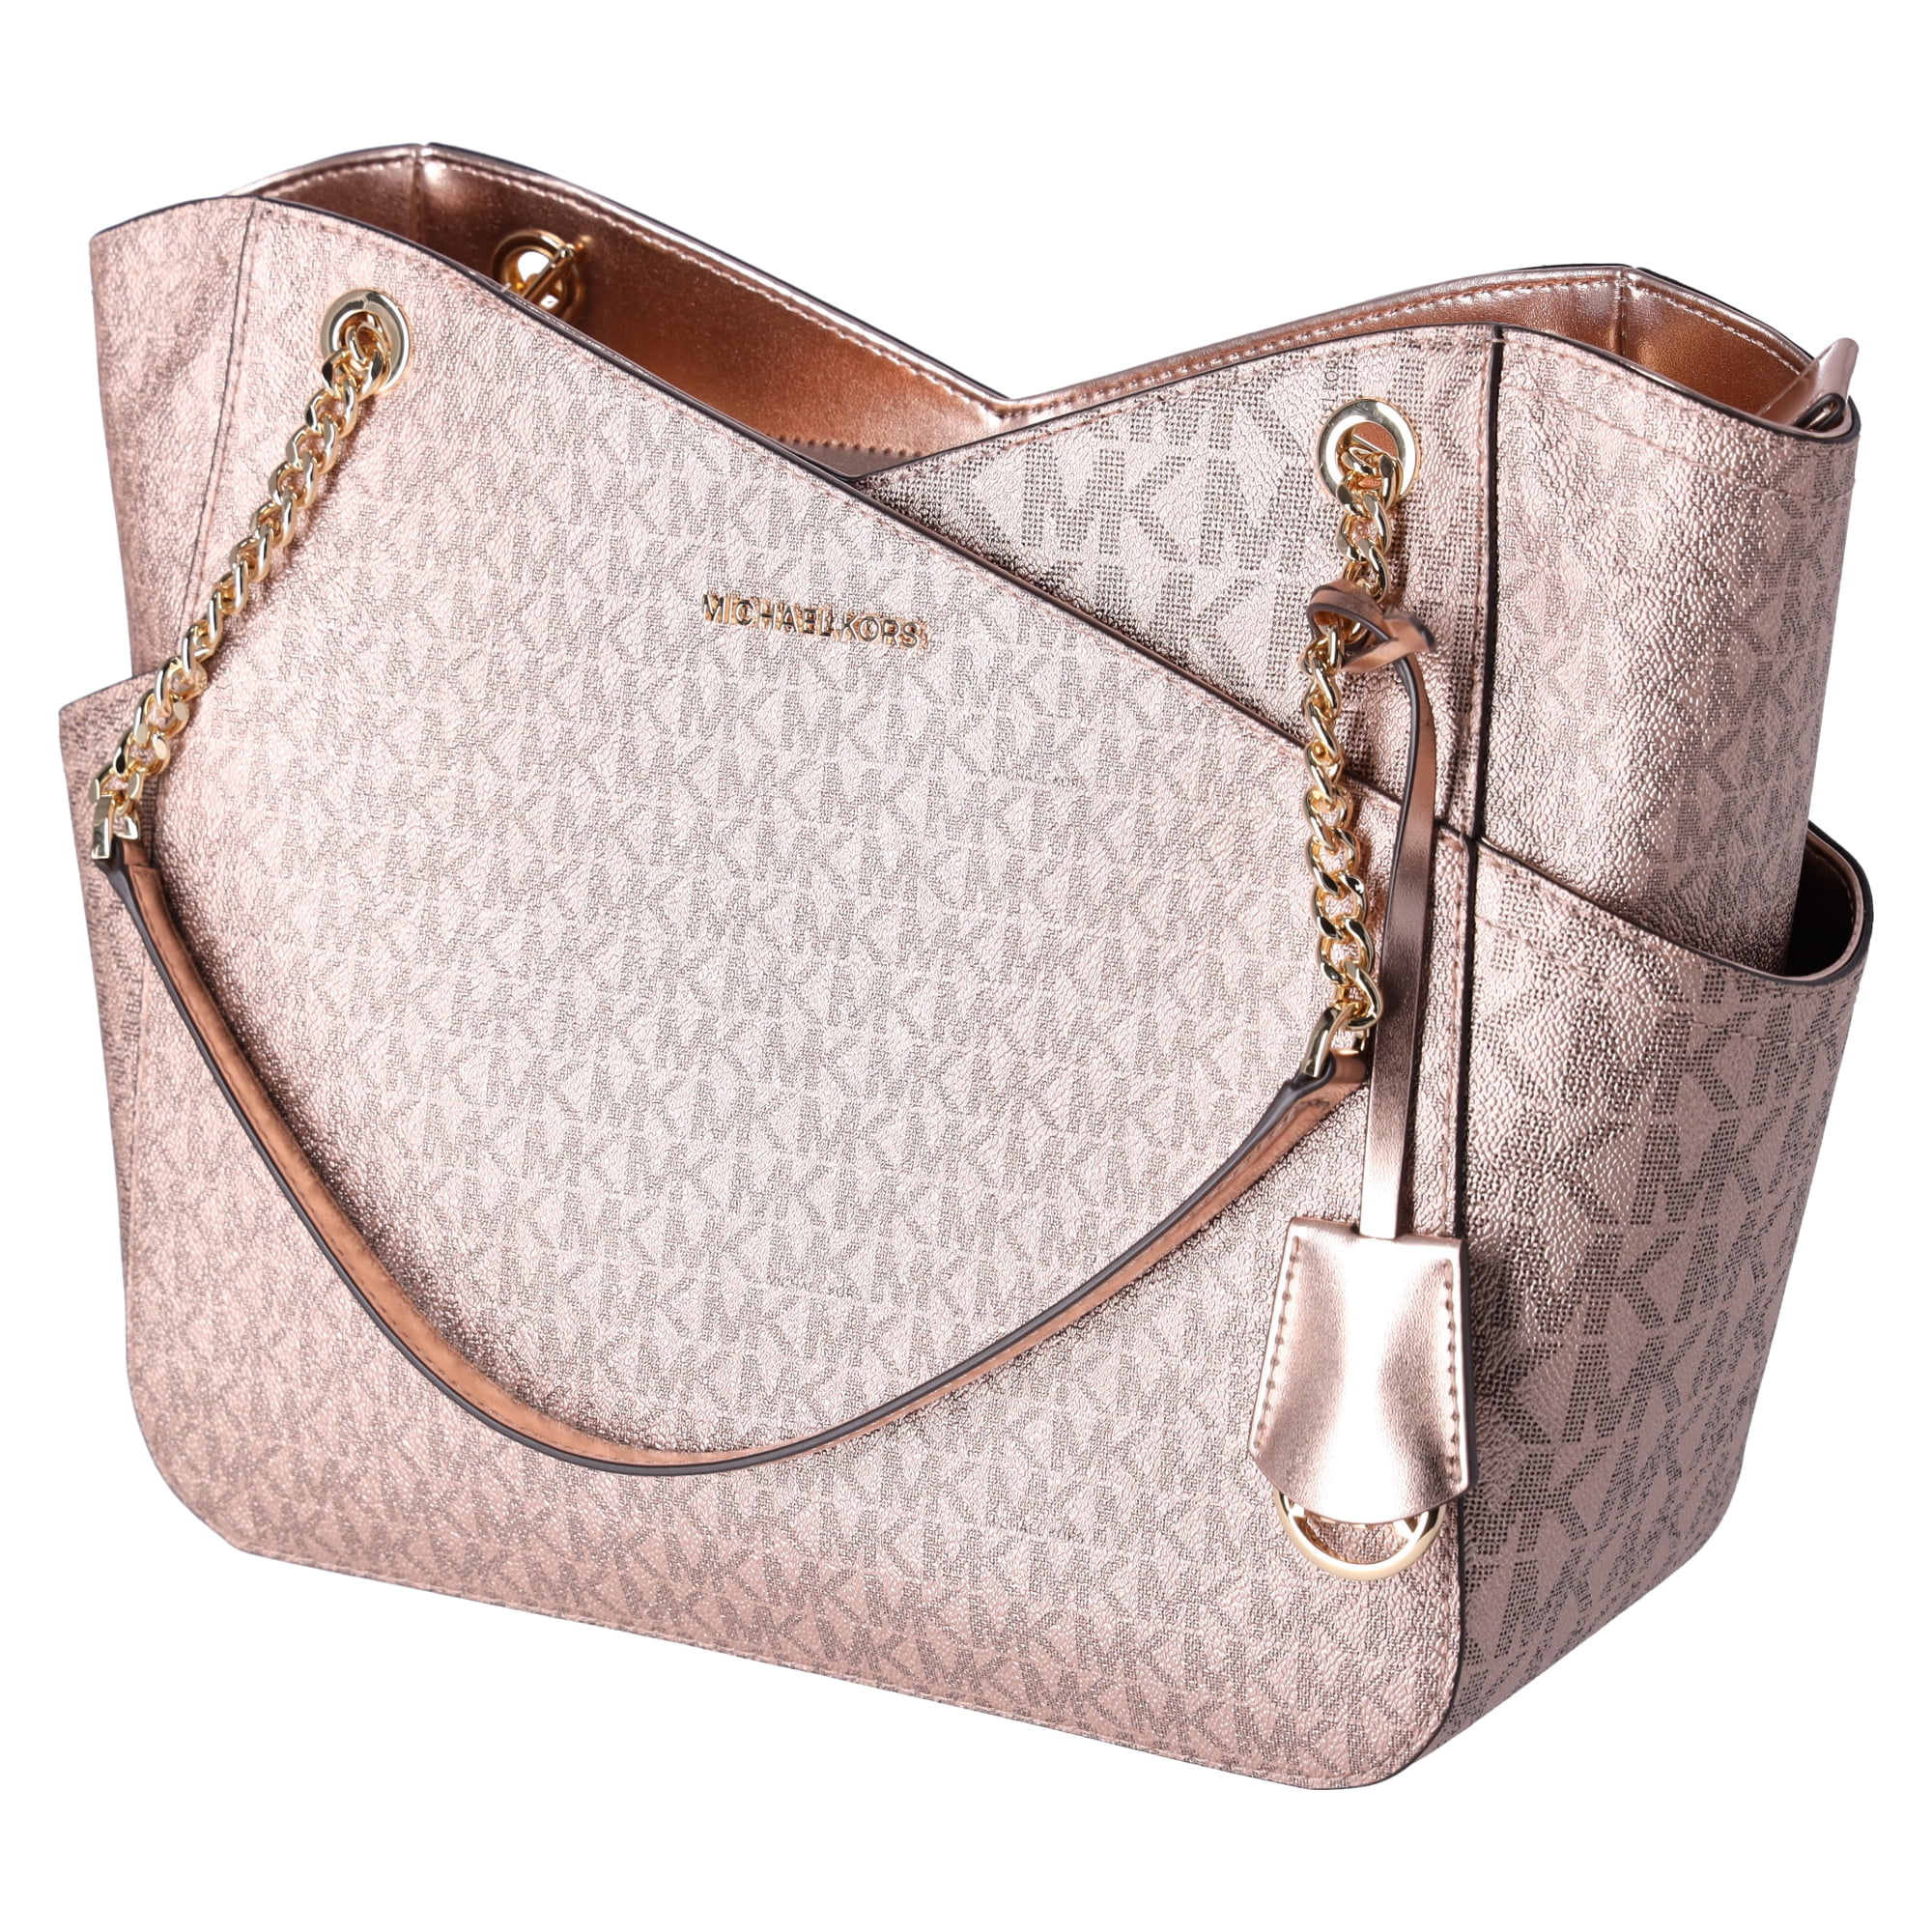 Michael Kors Tote Bag Purse Pink Blush Gold Large Shoulder Bag Crossbody  NEW | eBay